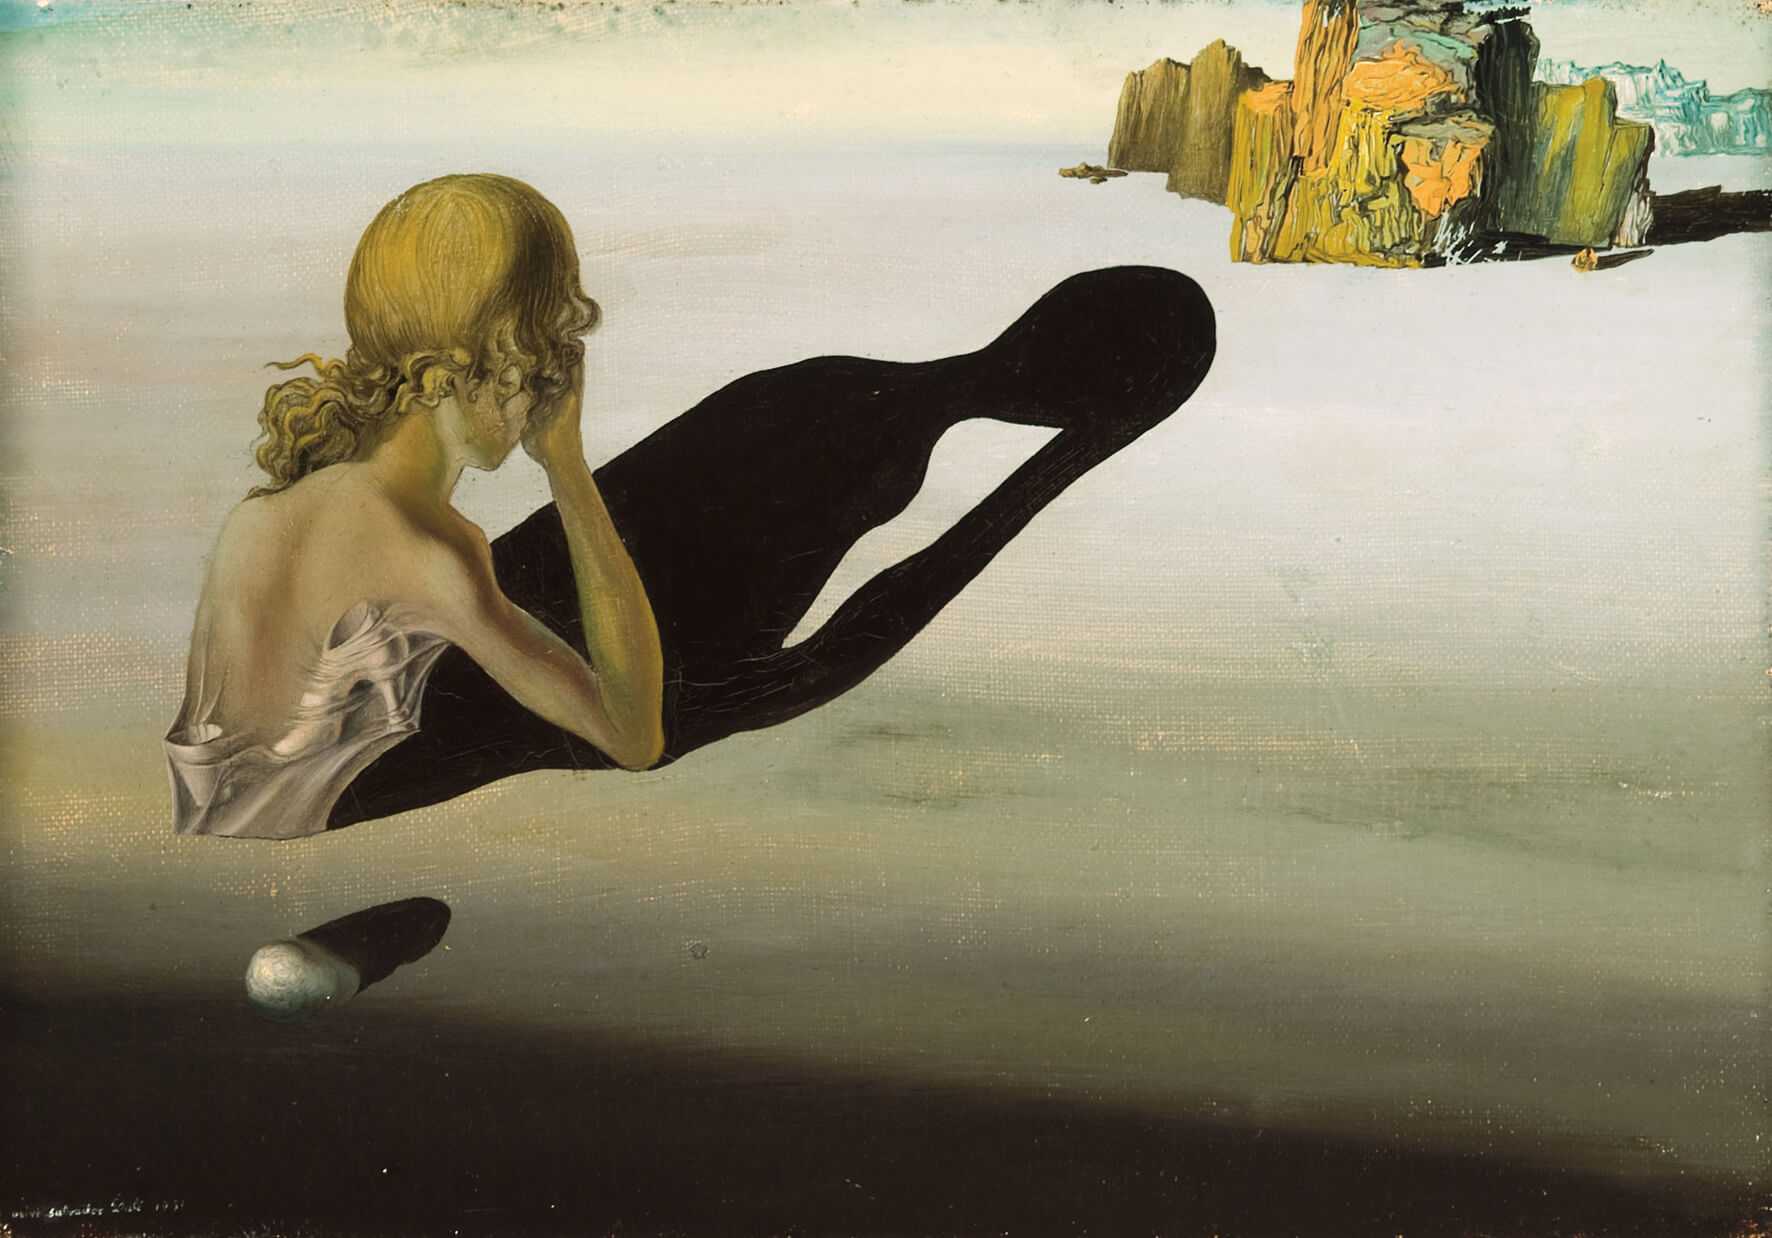 Werk von Salvador Dalí namens Remorse, bis zur Hüfte im Sand vergrabene Frau stützt Kopf in die Hände